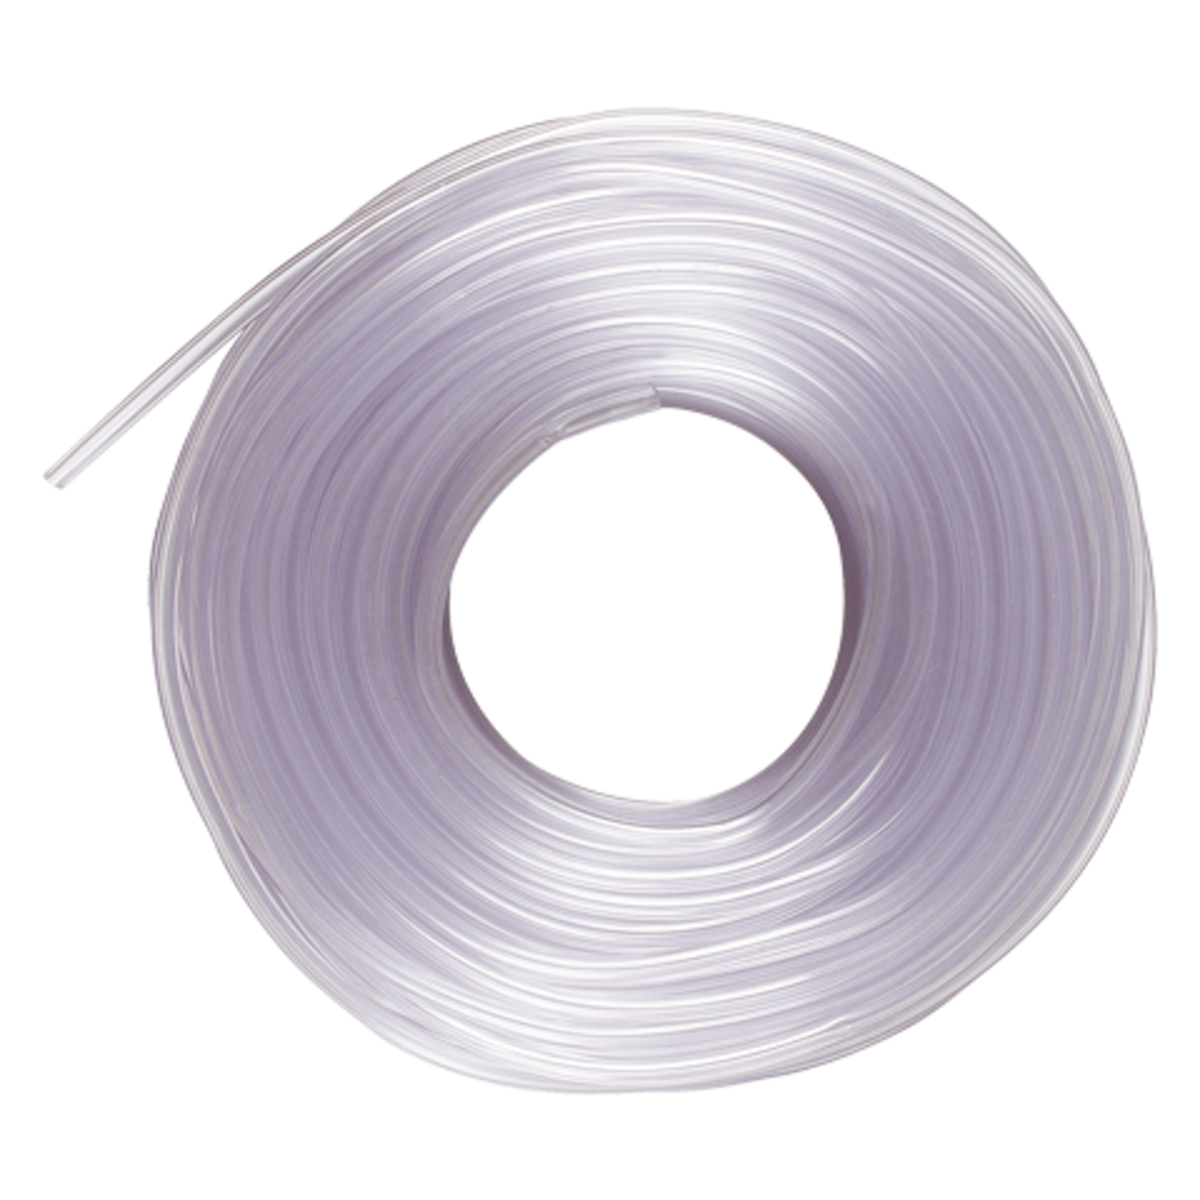 AFRISO PVC-Schlauch 4 x 2mm, glasklar L: 100 m, öl- und wasserfest VOR 2920 2950